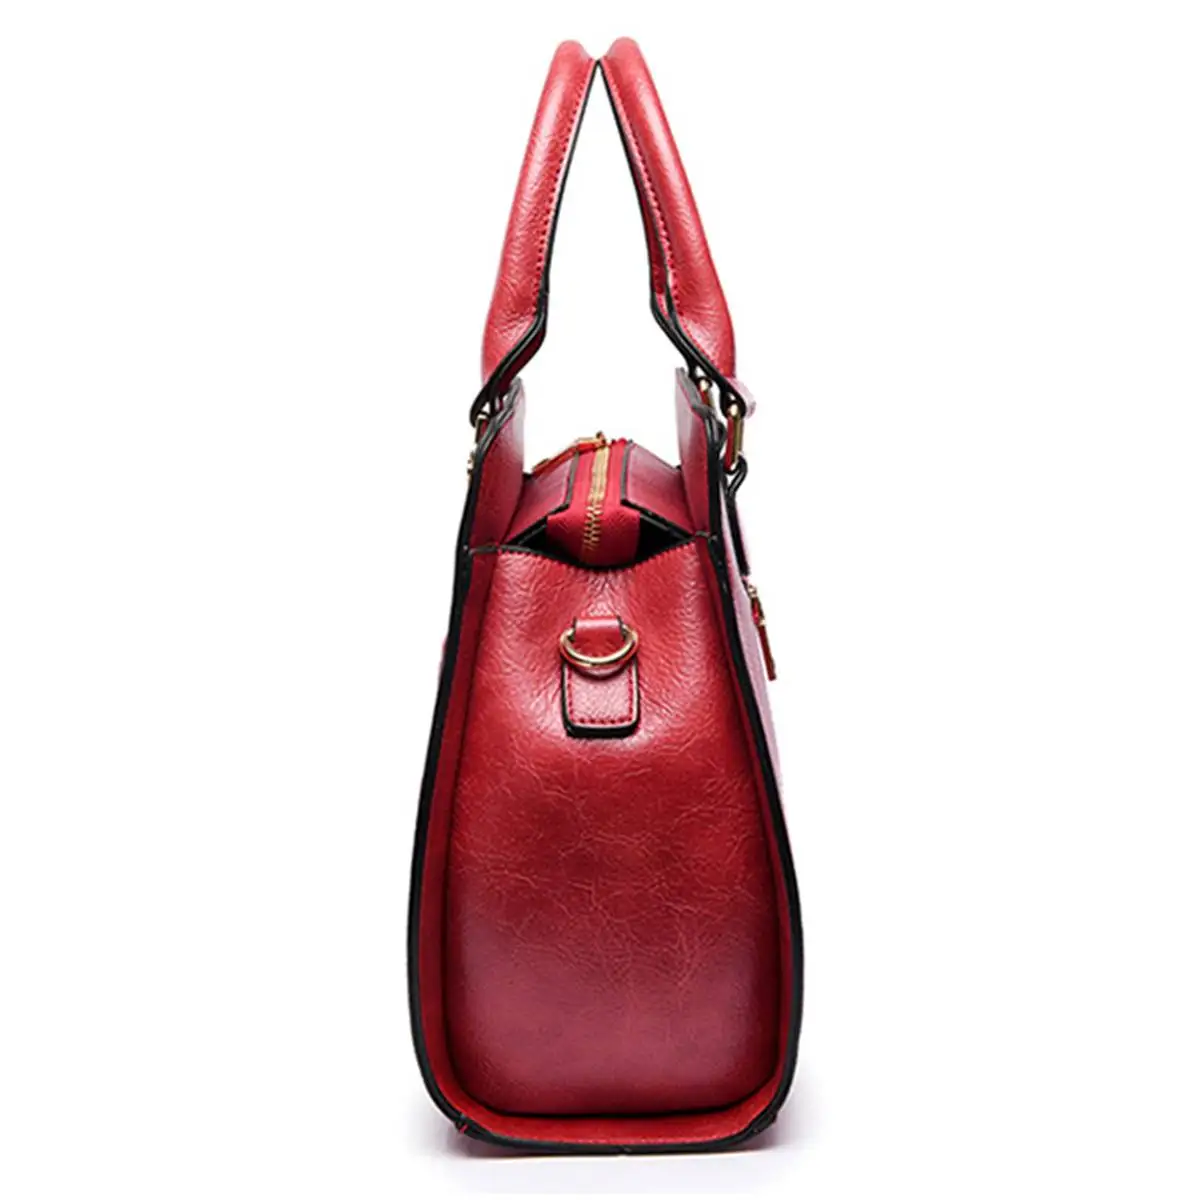 Bolsa Feminina сумка из искусственной кожи для женщин, Роскошная сумочка, женская сумка-мессенджер с тиснением и цветочным рисунком, сумка через плечо, брендовая Сумка-тоут зеленого и красного цвета